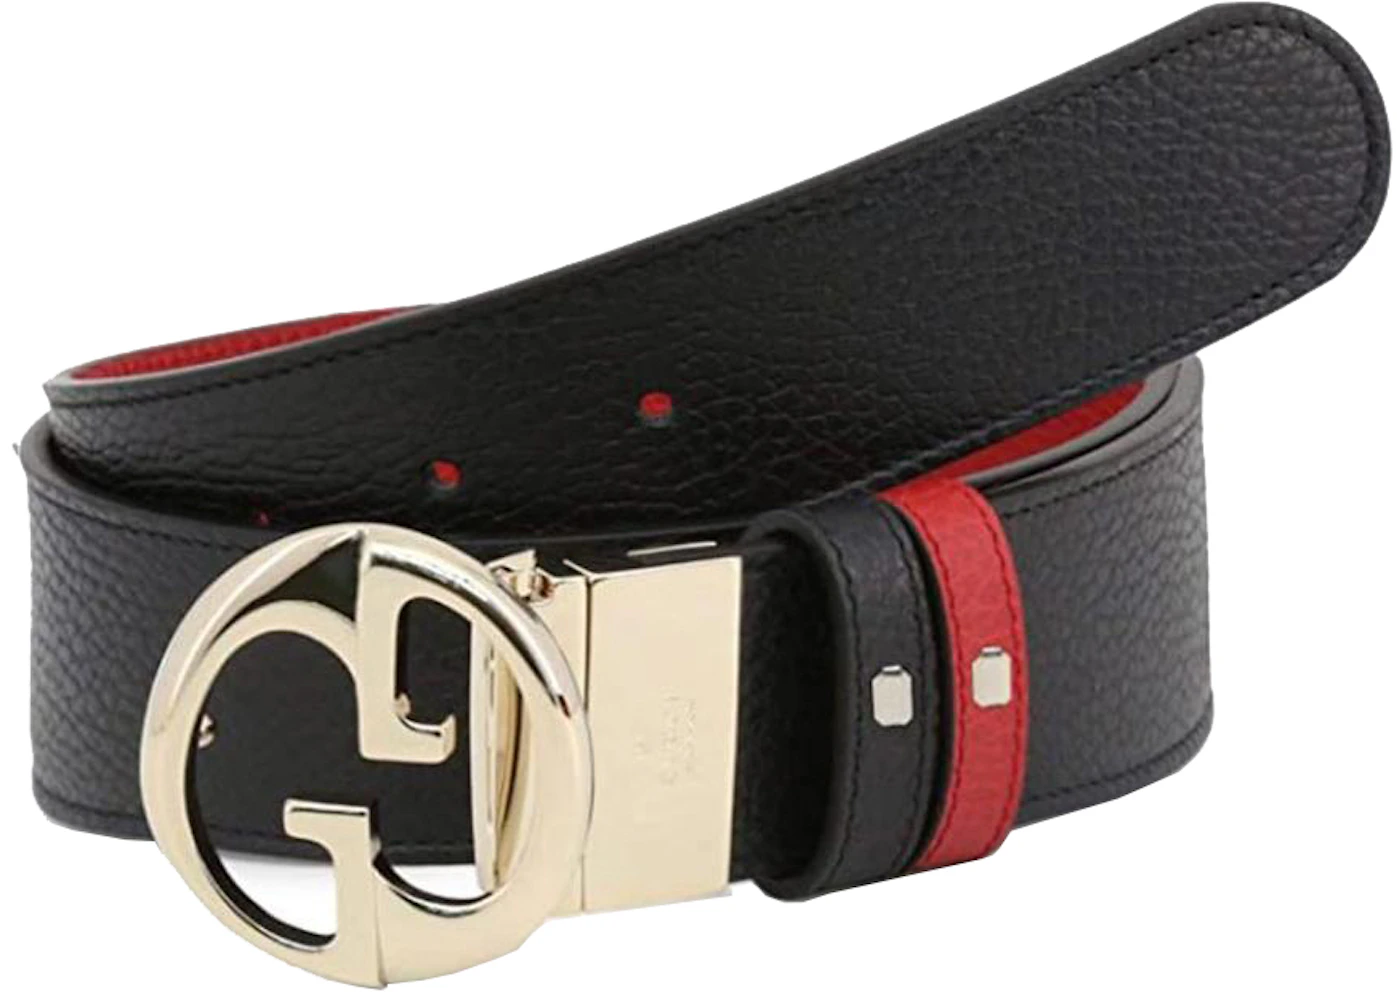 Gucci Vintage GG Supreme Interlocking GG Waist Belt - Size 32 / 80